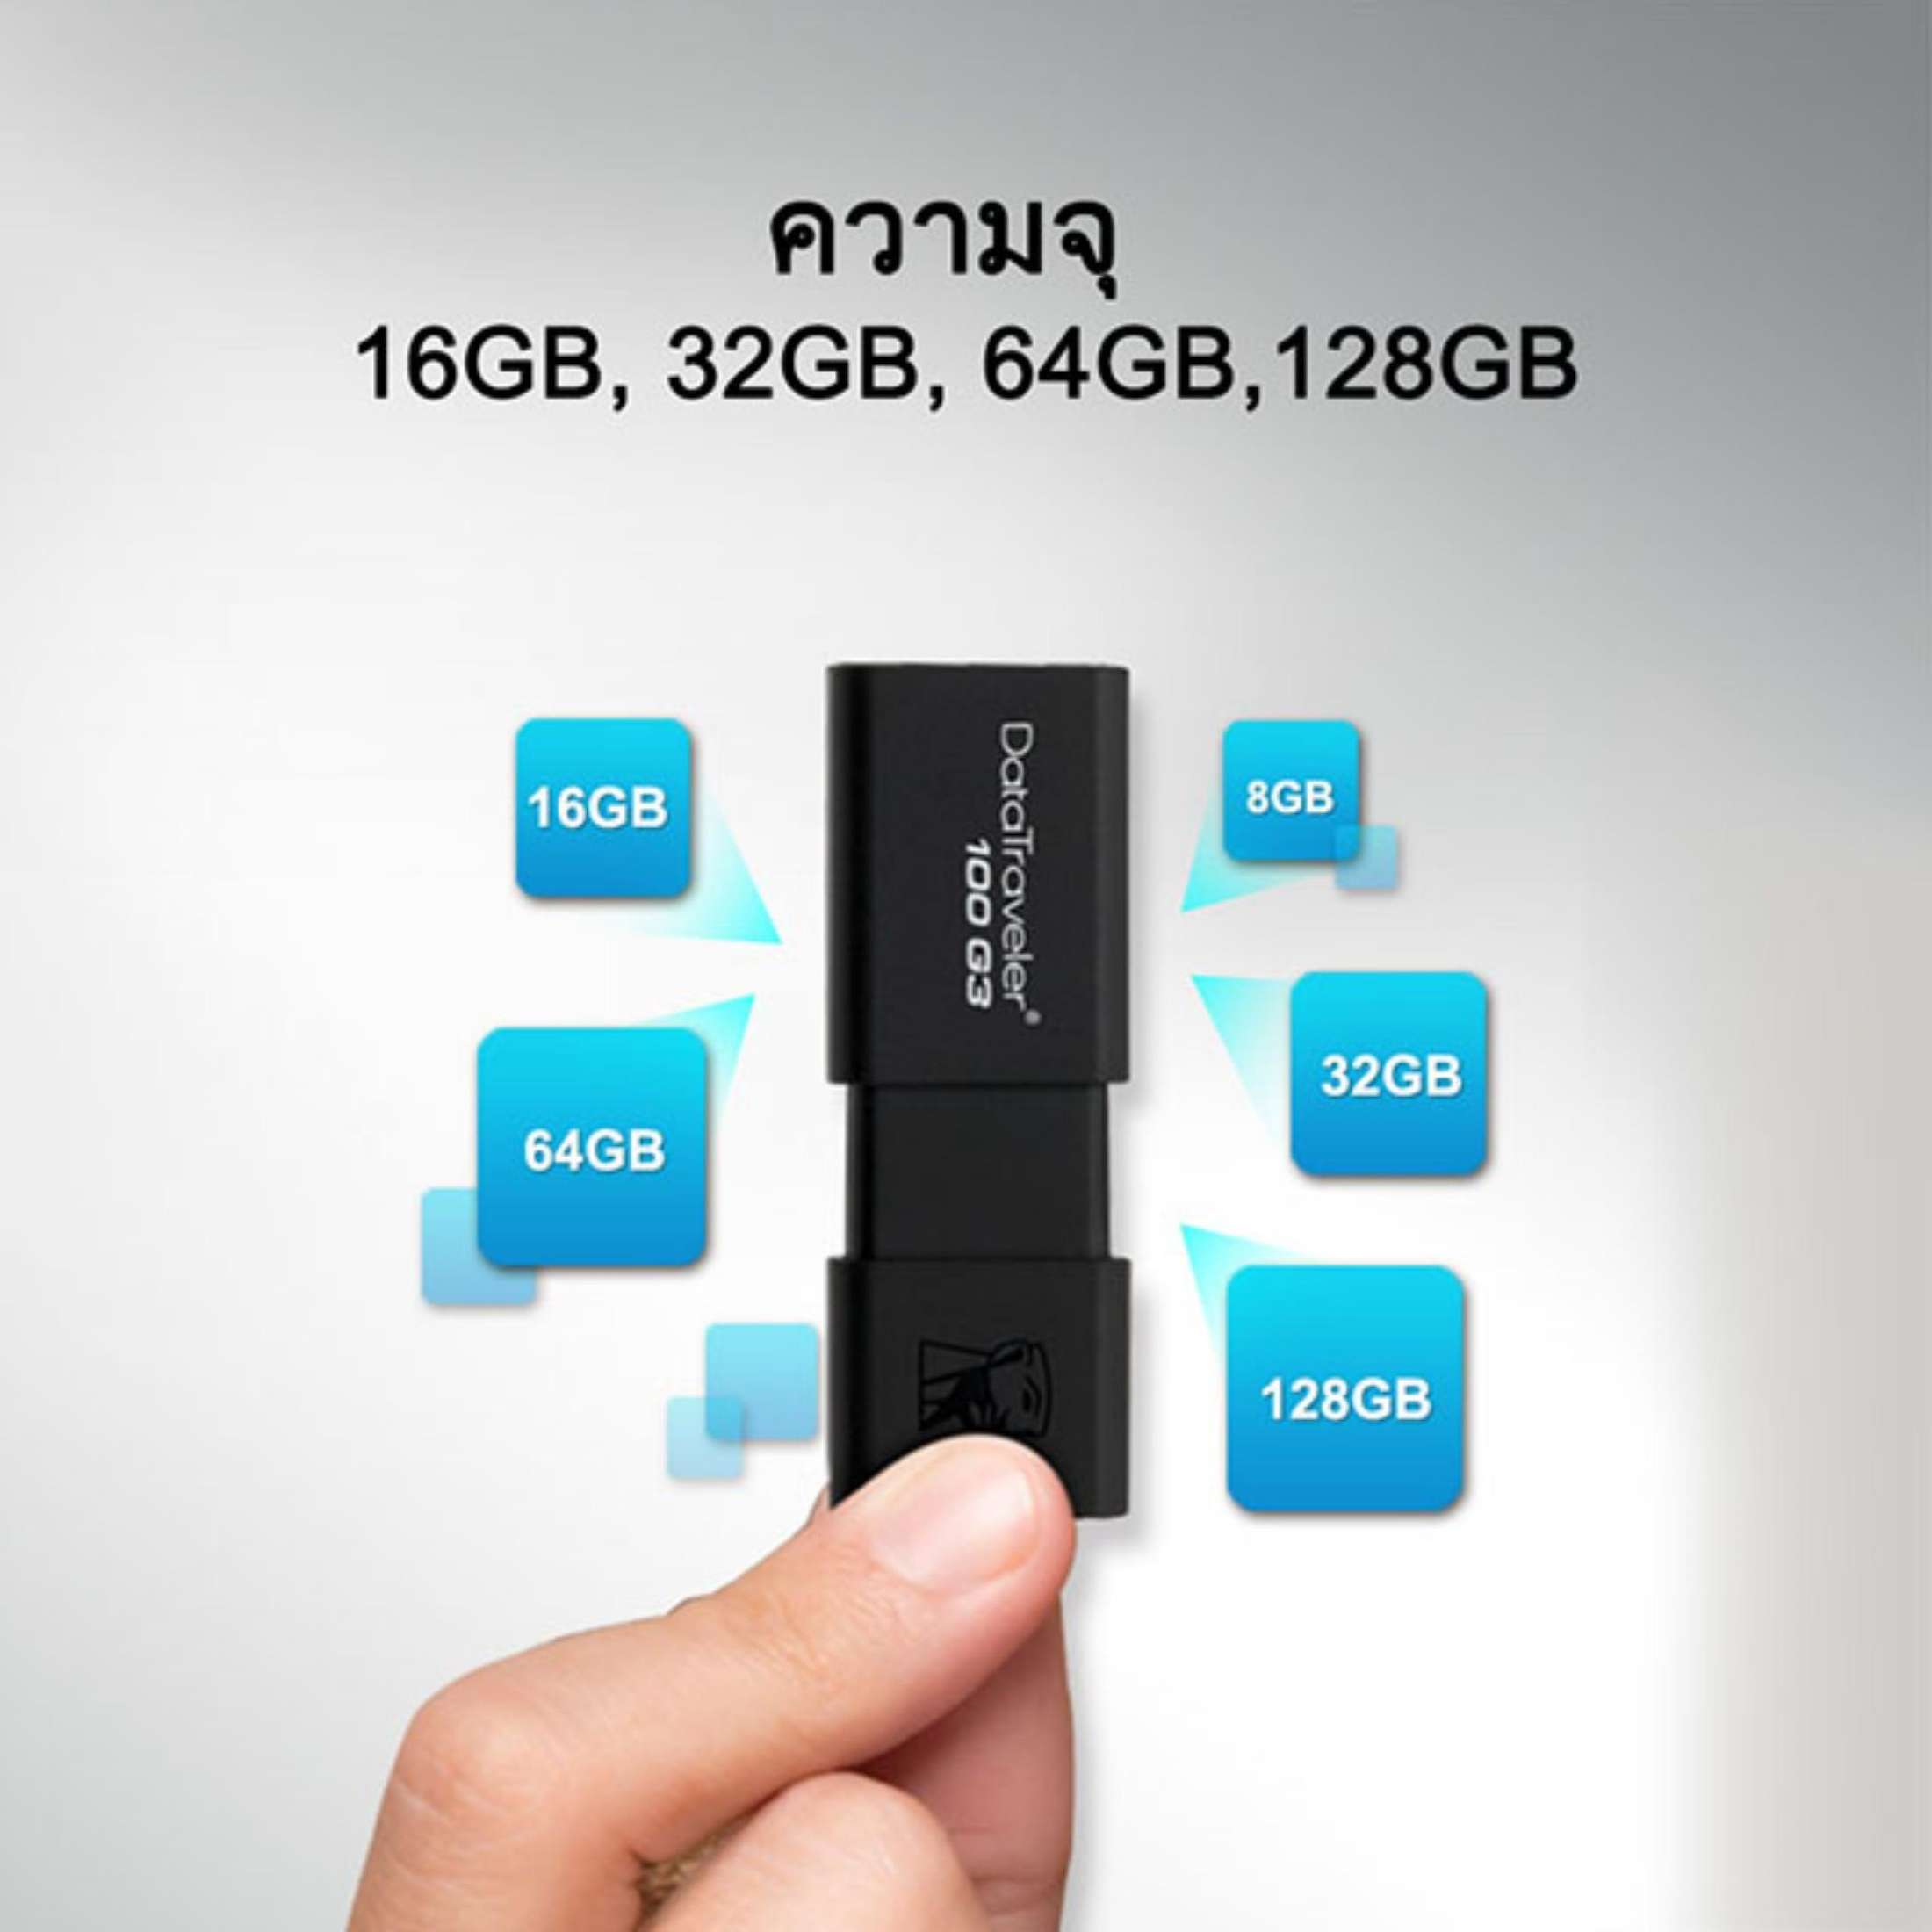 ข้อมูลเพิ่มเติมของ แฟลชไดร์ฟ Kingston USB 3.1 DataTraveler 100 G3 32GB 16GB 64GB